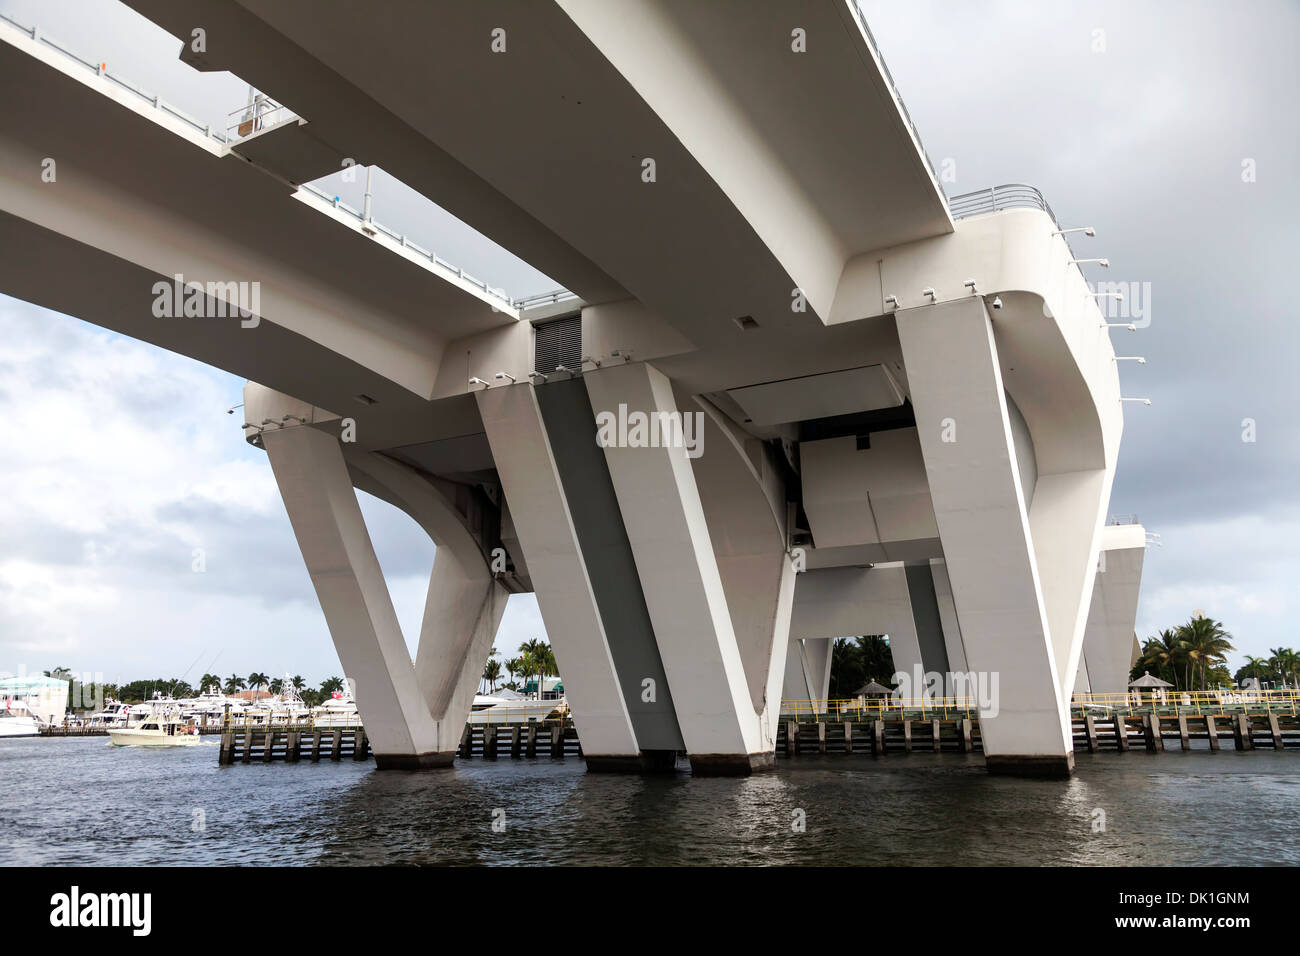 El 17th Street Causeway de doble hoja, cruza el puente bascule Intracoastal en Port Everglades en Fort Lauderdale, Florida, EE.UU. Foto de stock